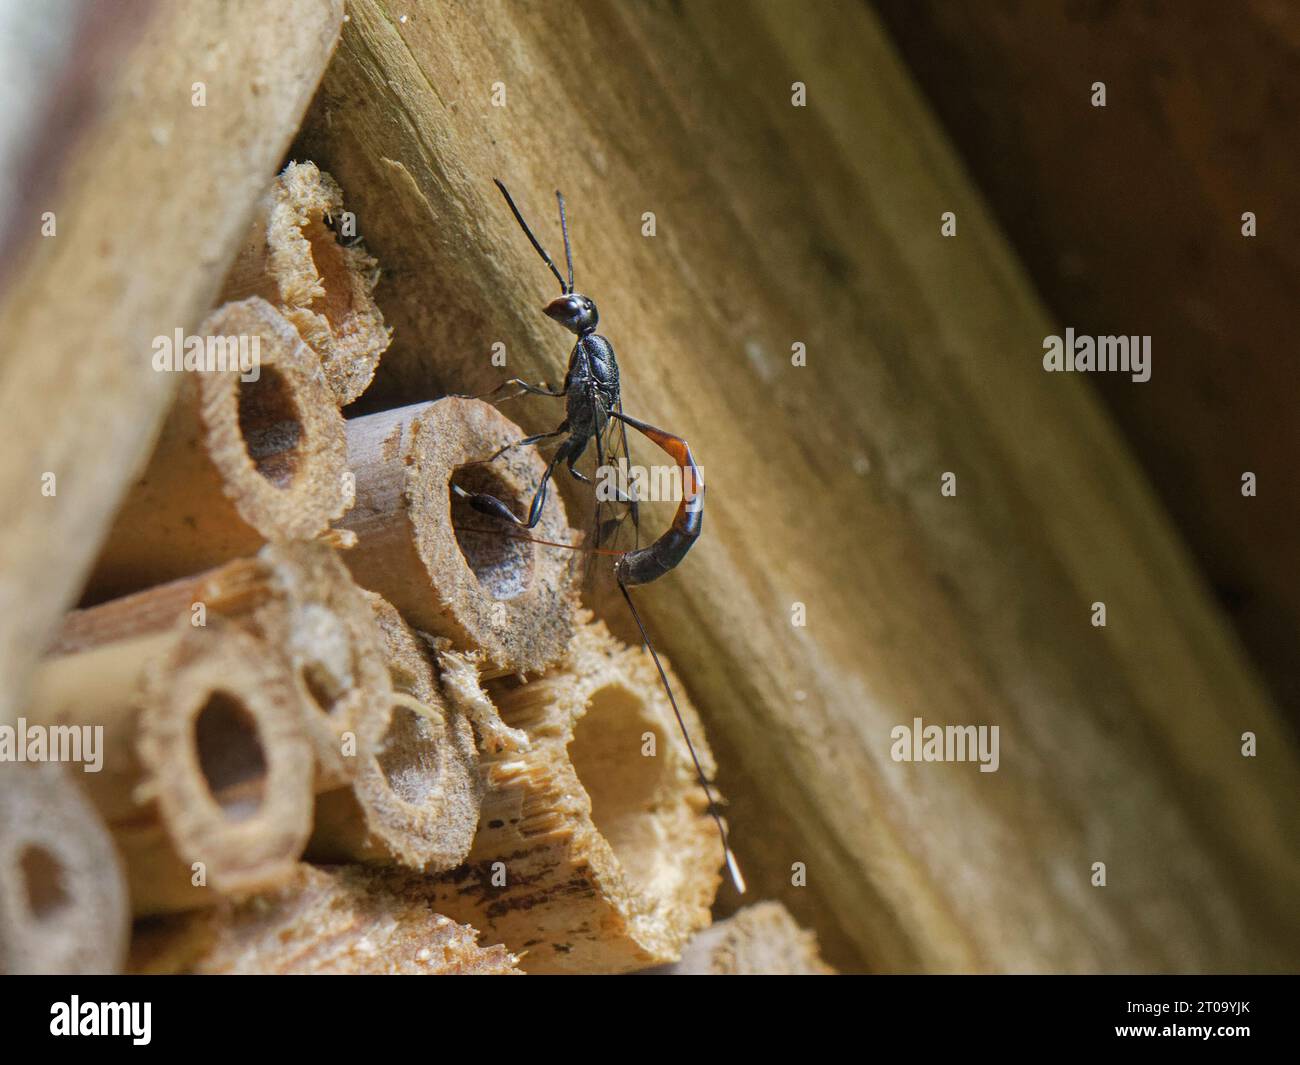 Grande pennant / vespa di carota selvatica (Gasteruption jaculator) che depone uova nel nido di un'ape comune con il volto giallo (Hylaeus communis) in un hotel di insetti. Foto Stock